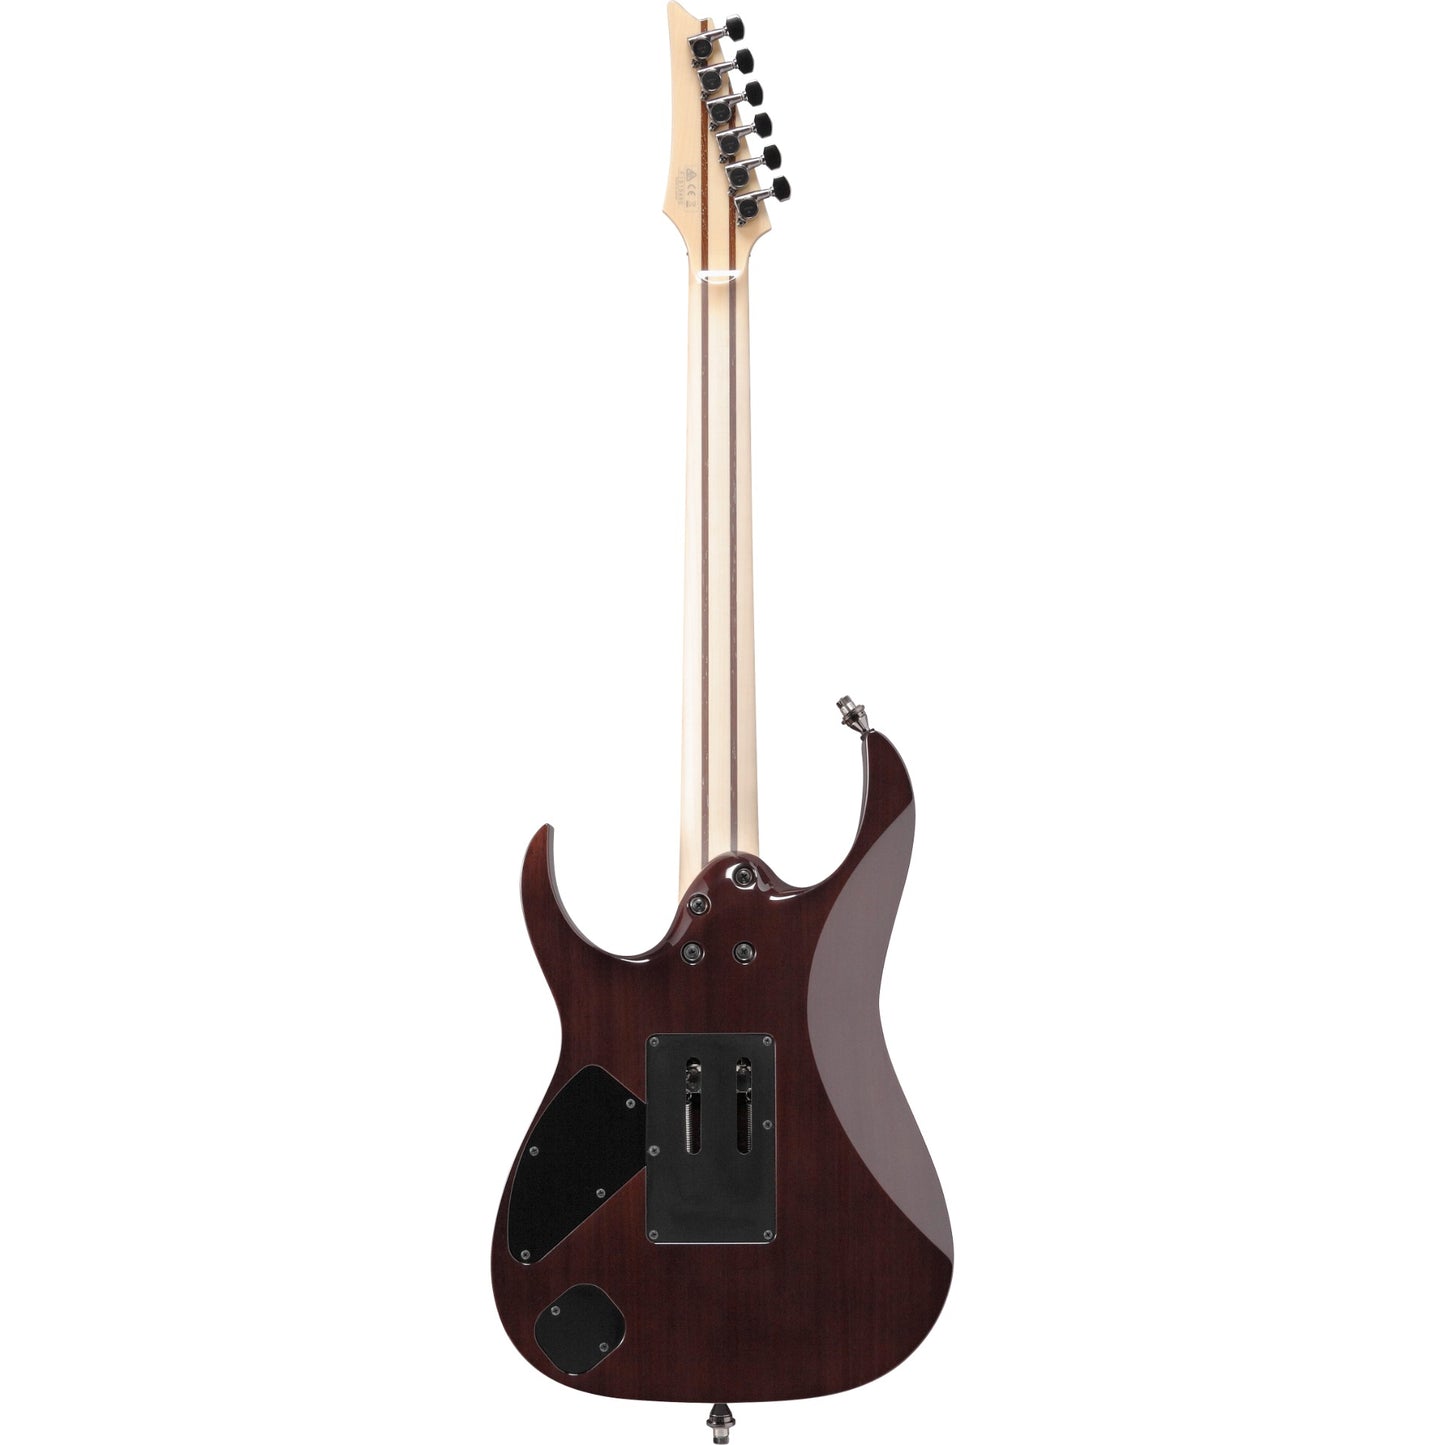 Ibanez RG8570 RG j.custom 6-String Electric Guitar in Black Rutile w/ Case